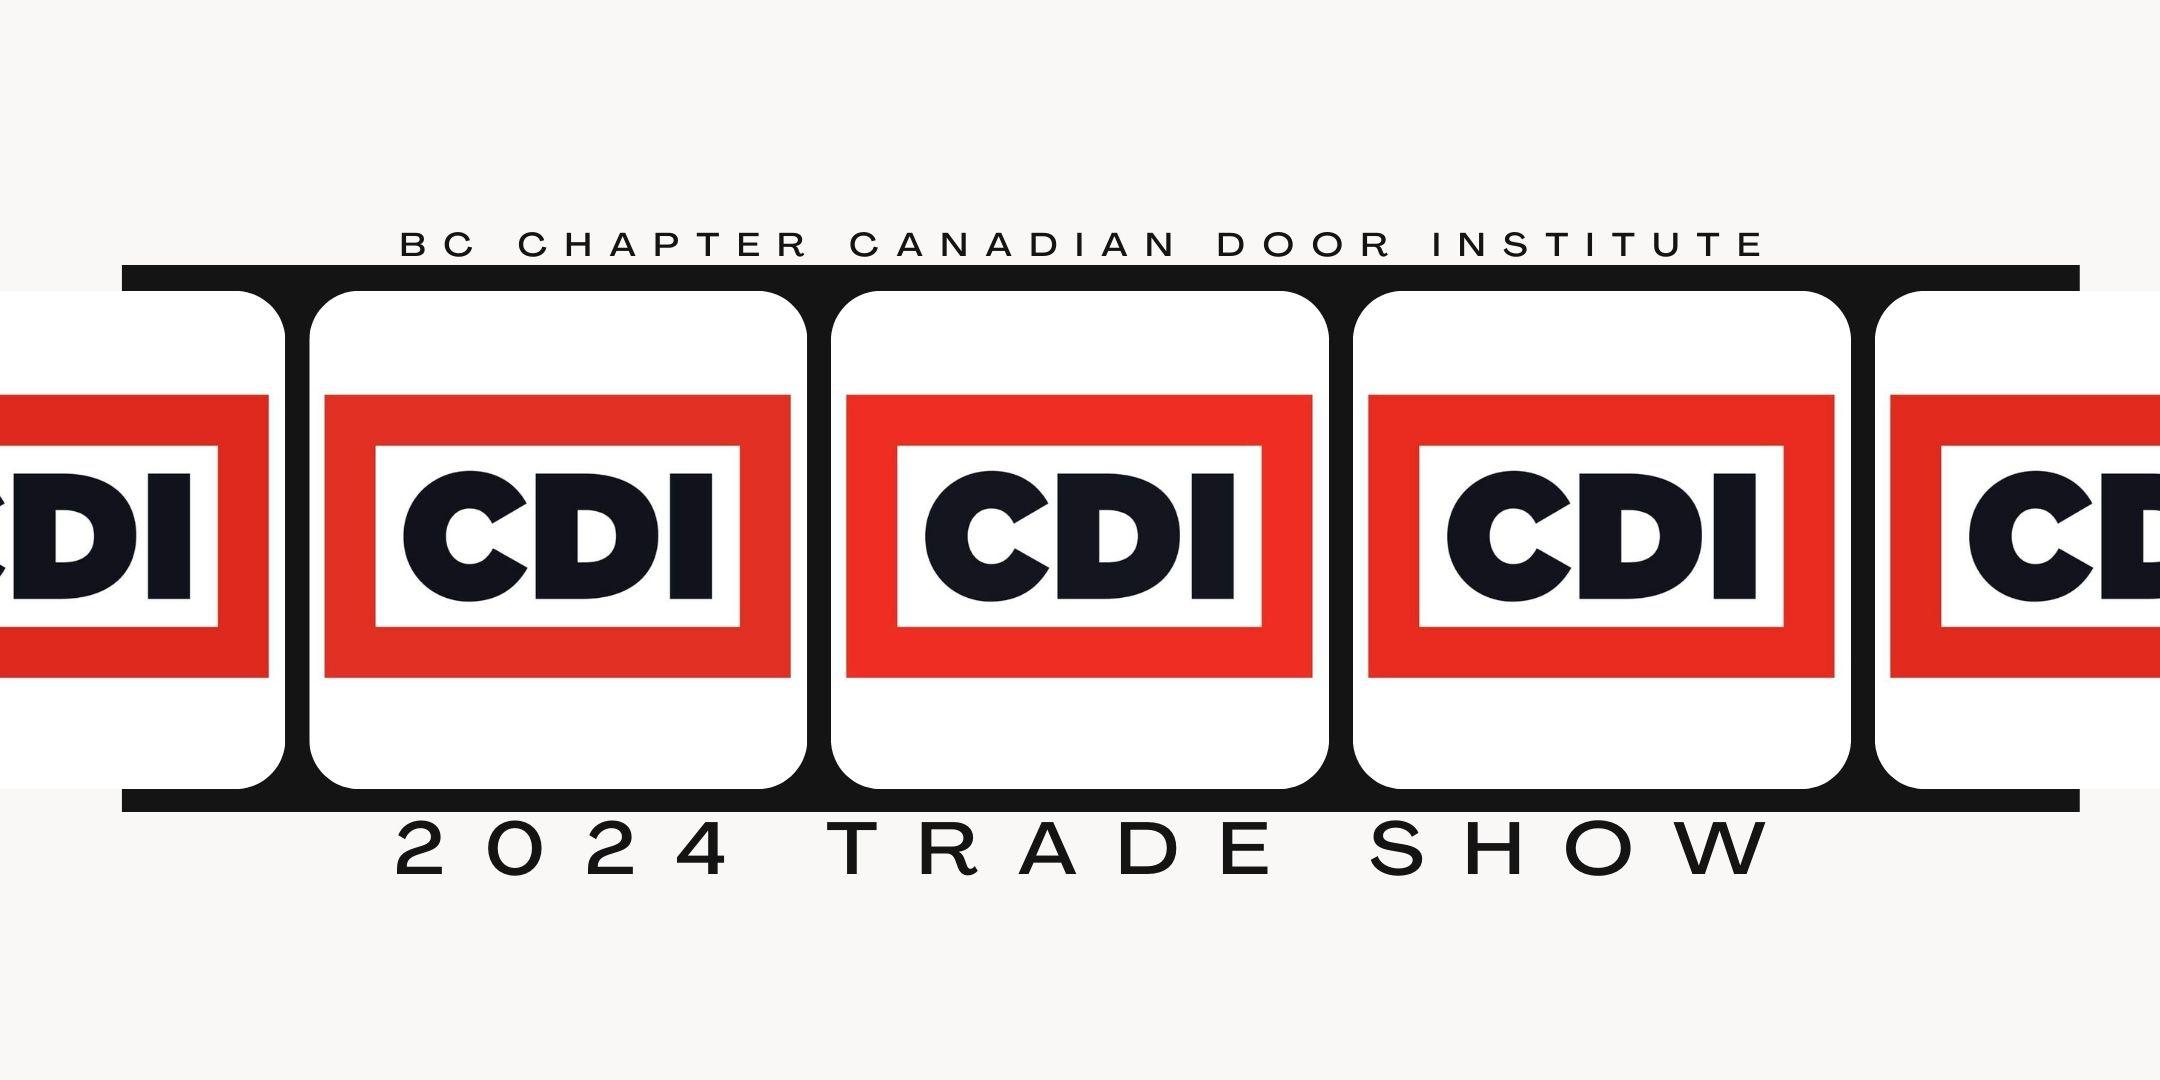 BC CDI Trade Show 2024 Tickets, Thu, 9 May 2024 at 8:00 AM